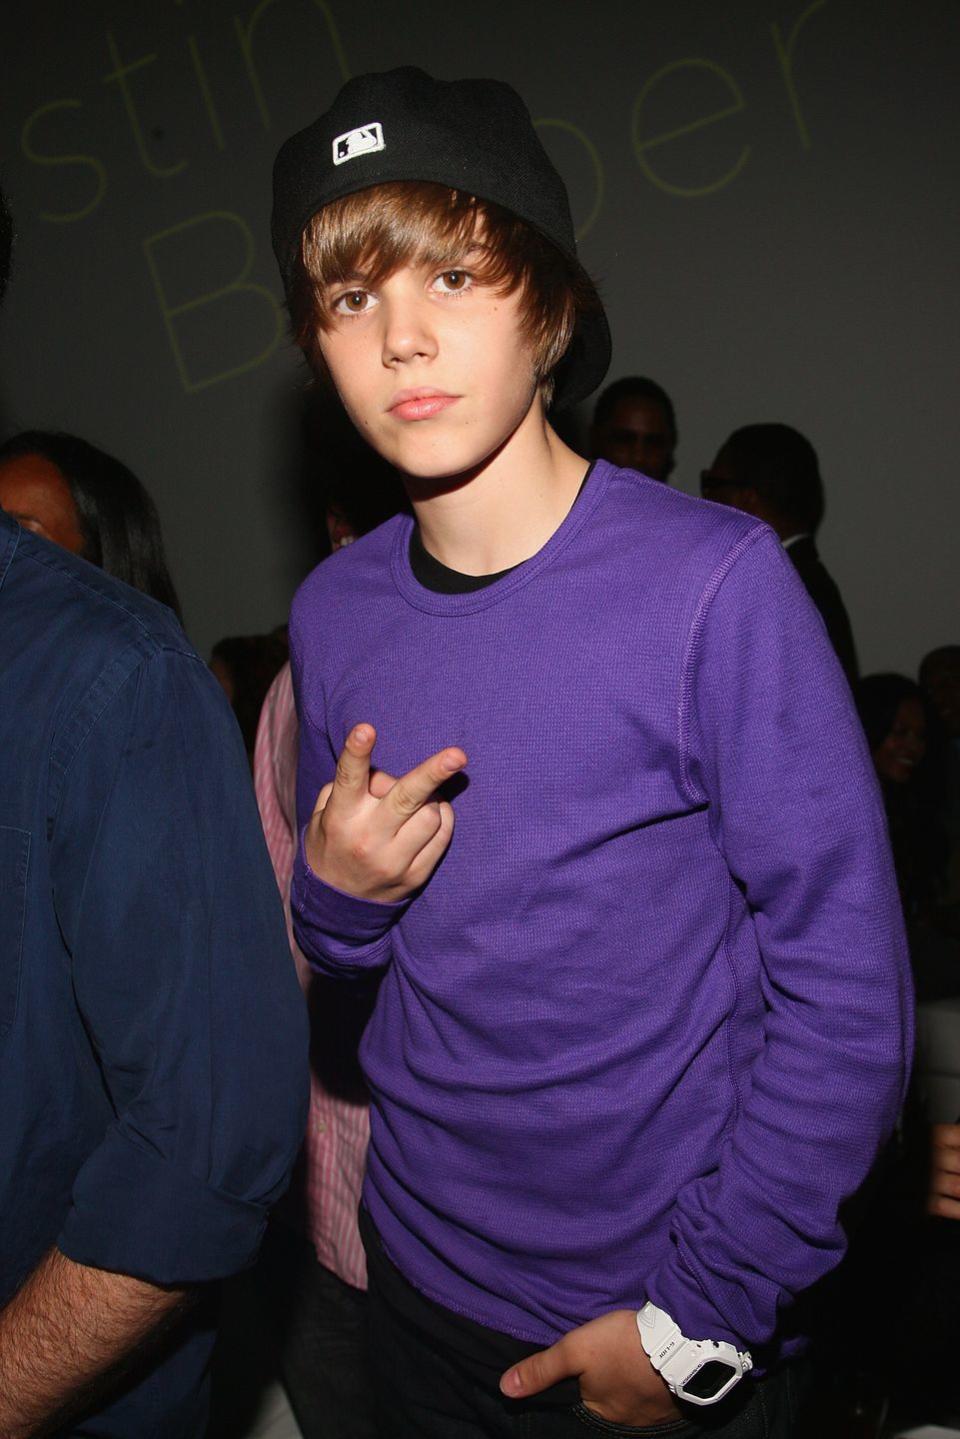 THEN: Justin Bieber